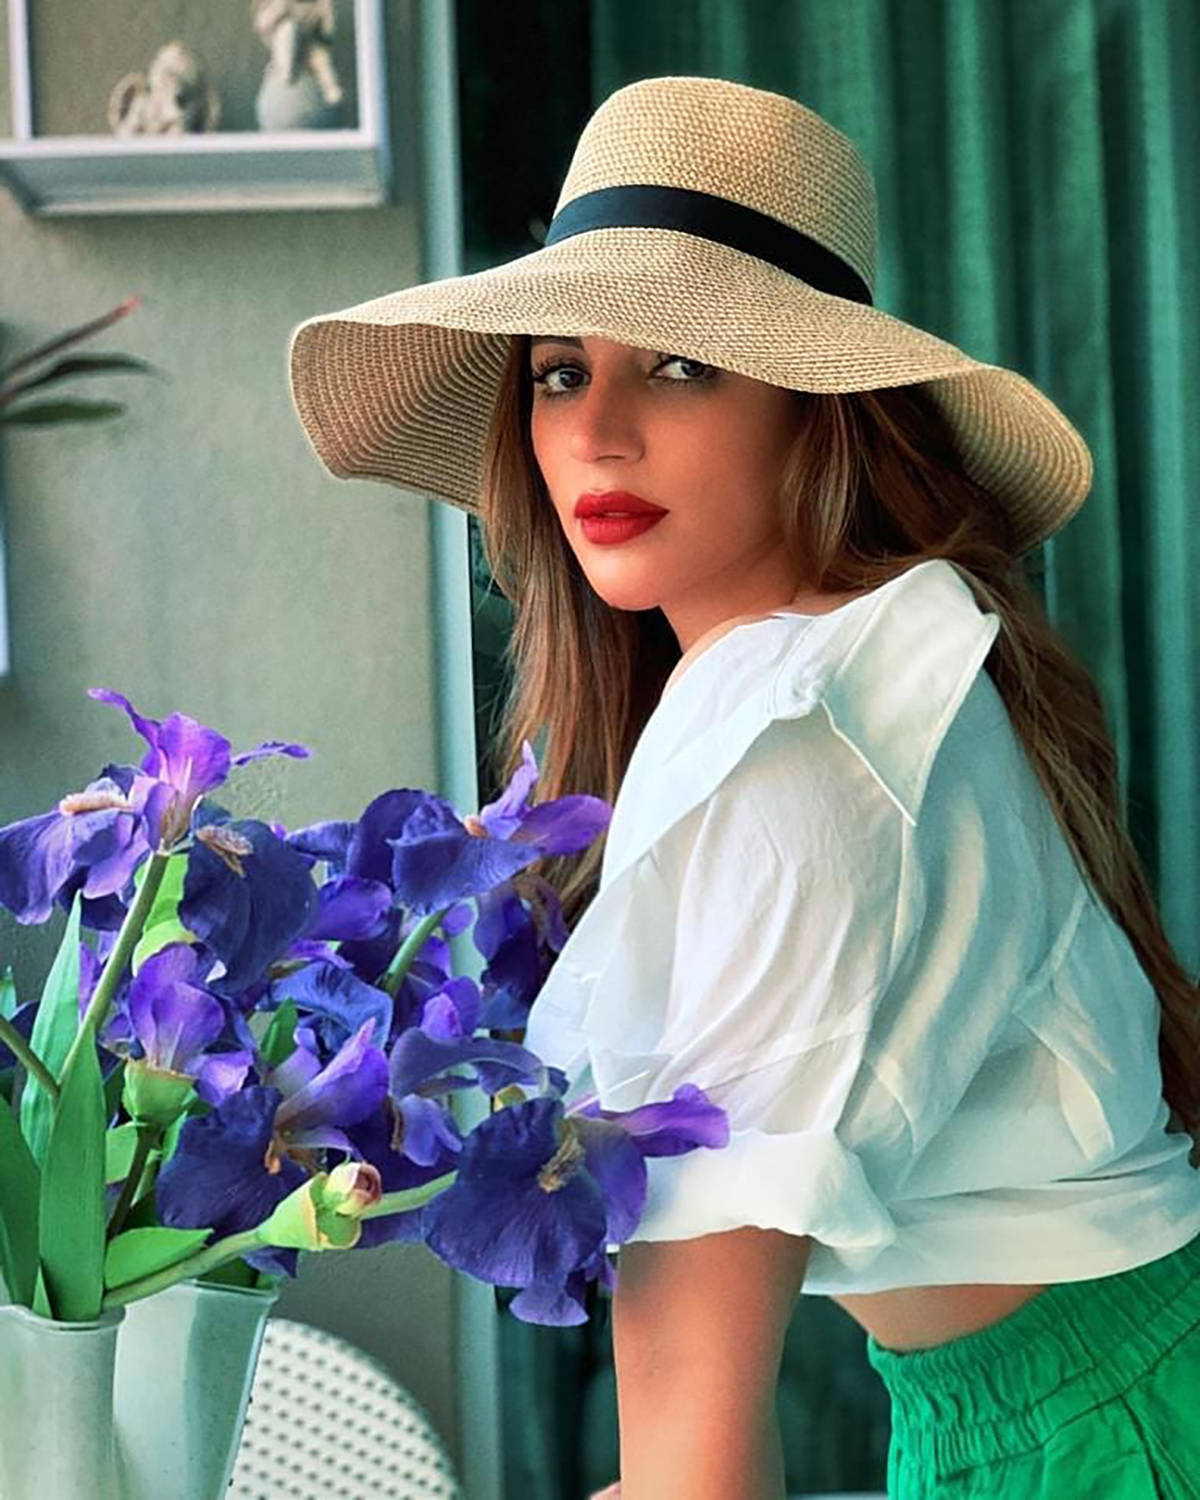 TV actress Shama Sikander’s gorgeous photos shake up the internet